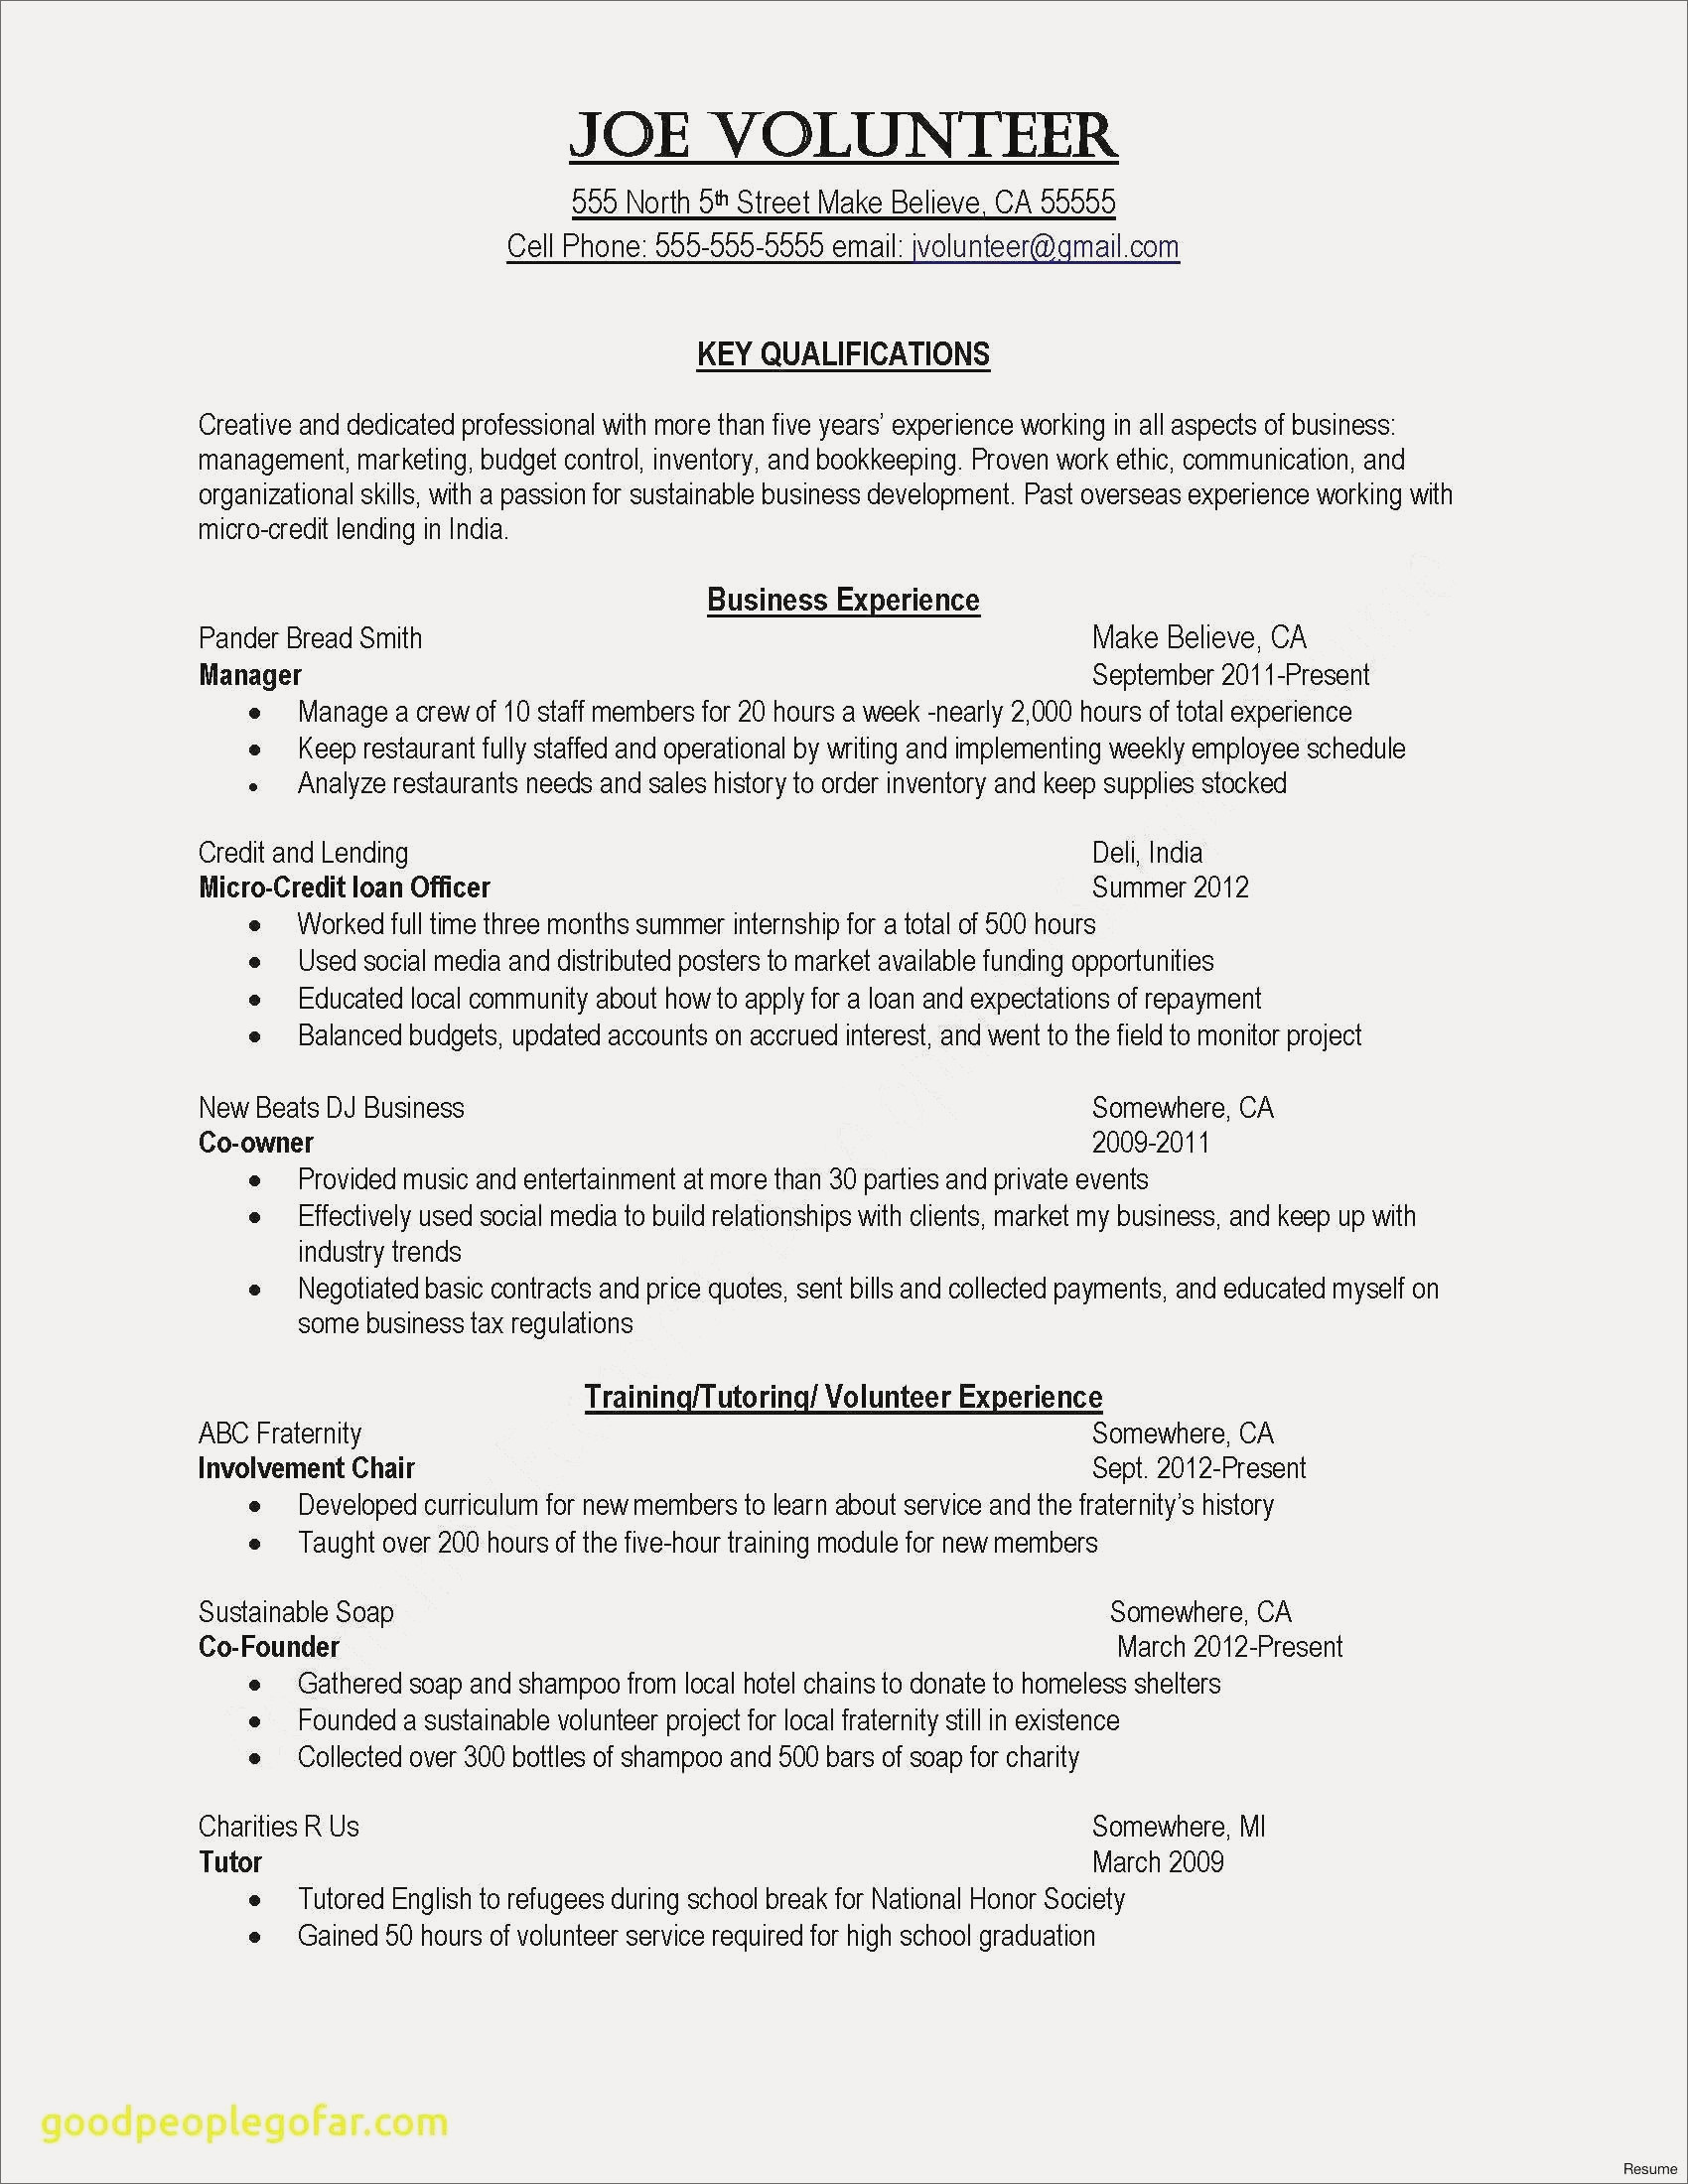 How To Do A Resume Job Resume Pdf Best Student Resume For Job Application Pdf Best Job Resume Template Of Job Resume Pdf how to do a resume|wikiresume.com